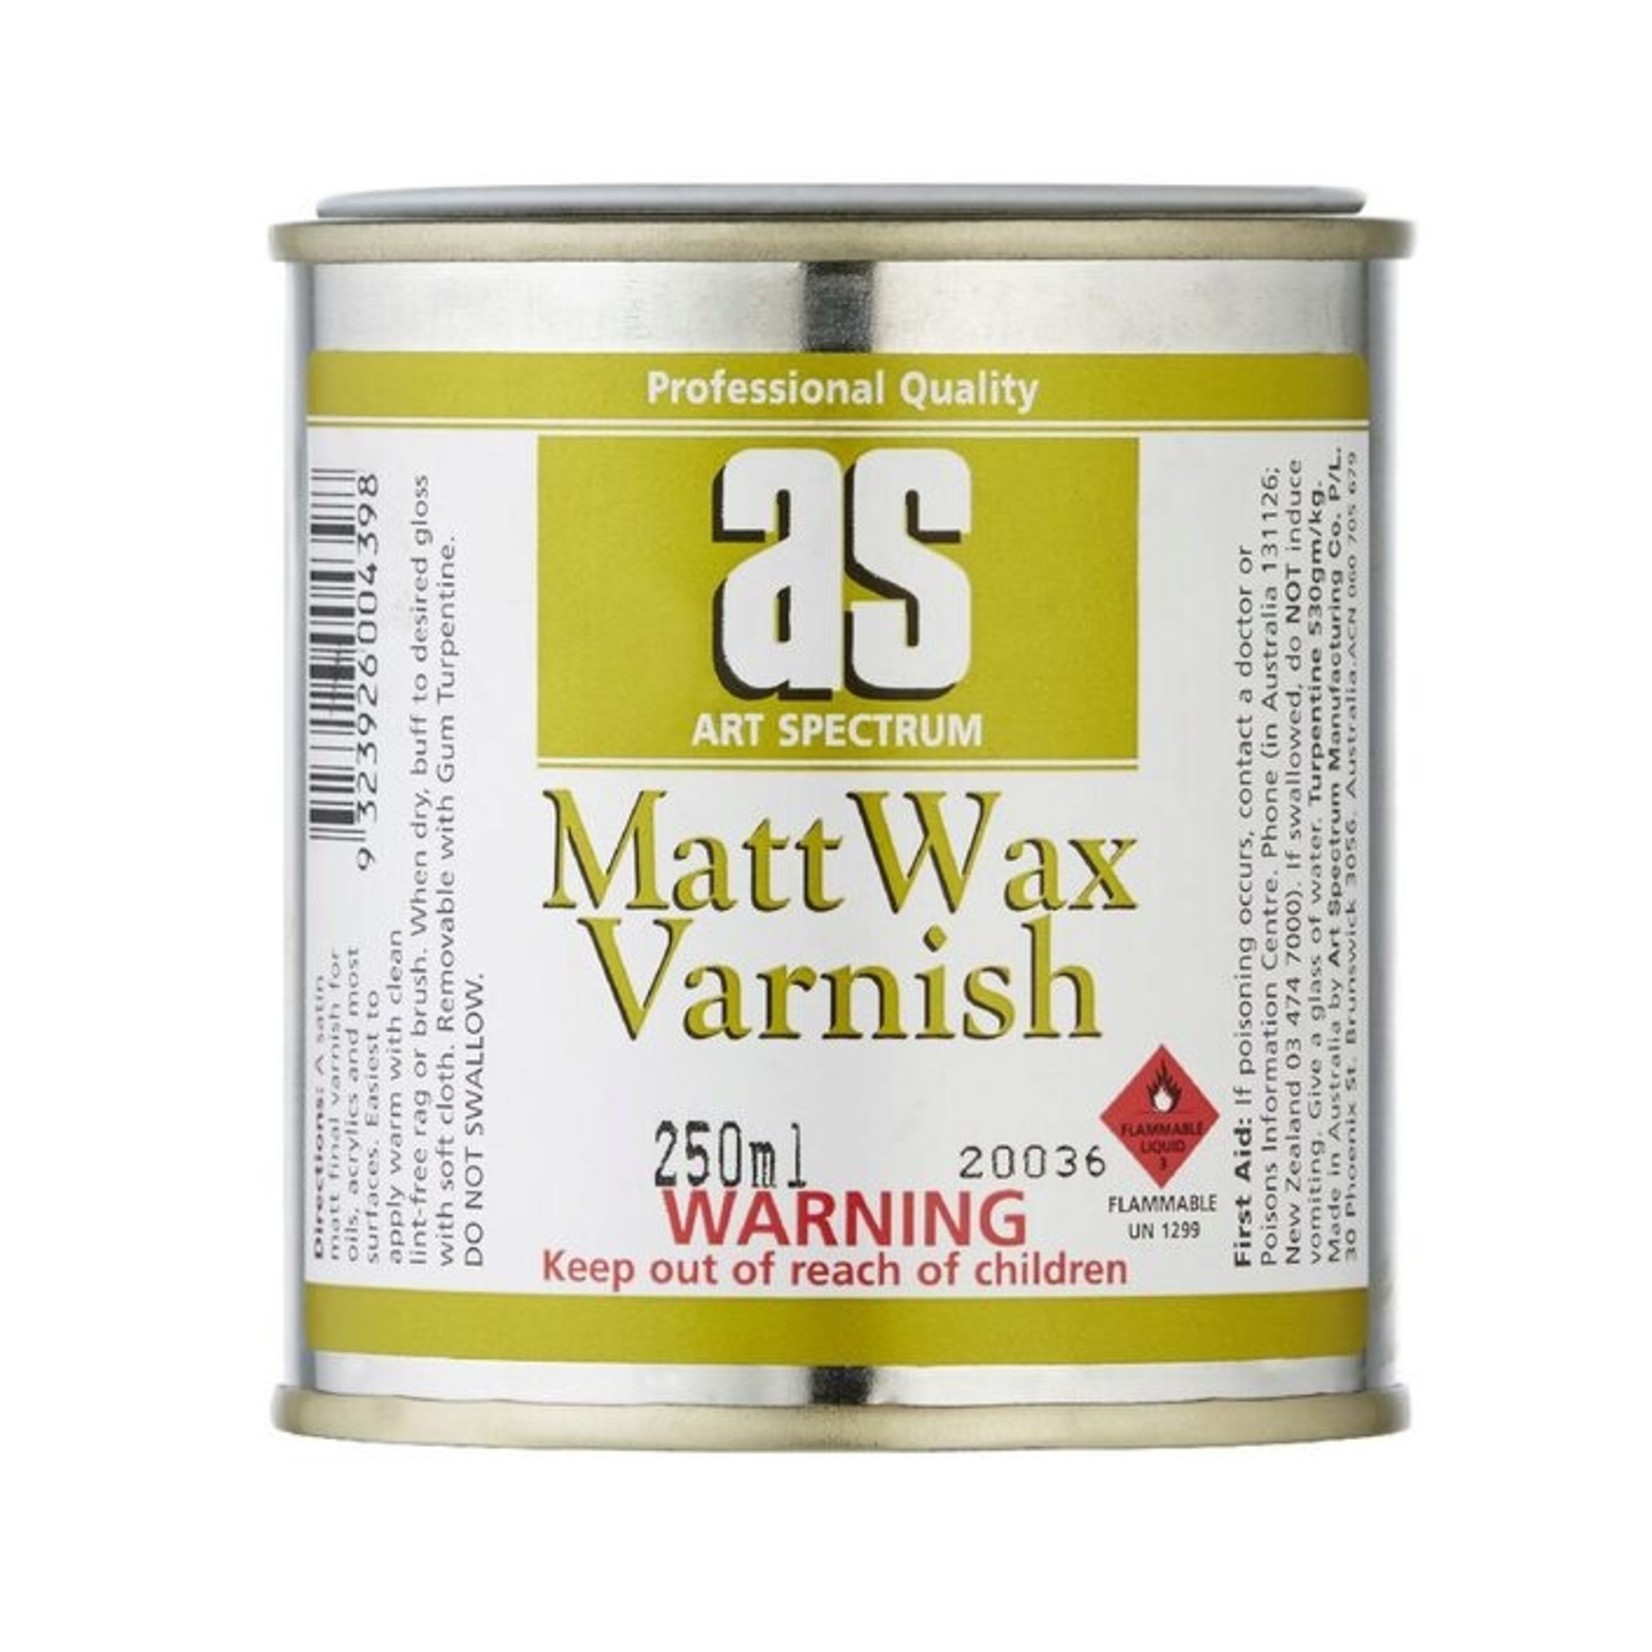 Art Spectrum AS Matt Wax Varnish